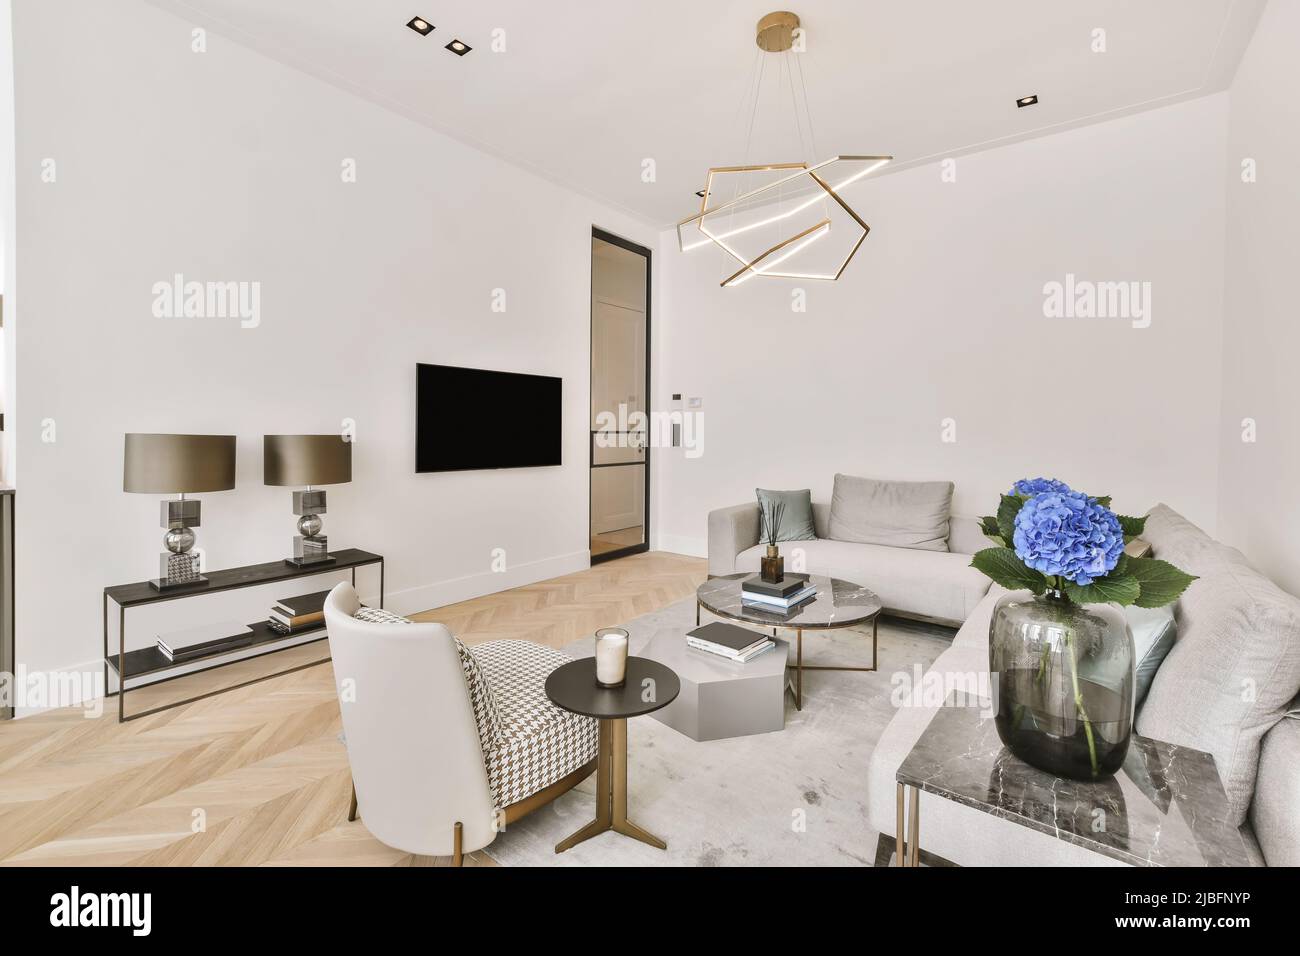 Salón interior con un cómodo sofá, silla mecedora y suaves almohadas  Fotografía de stock - Alamy